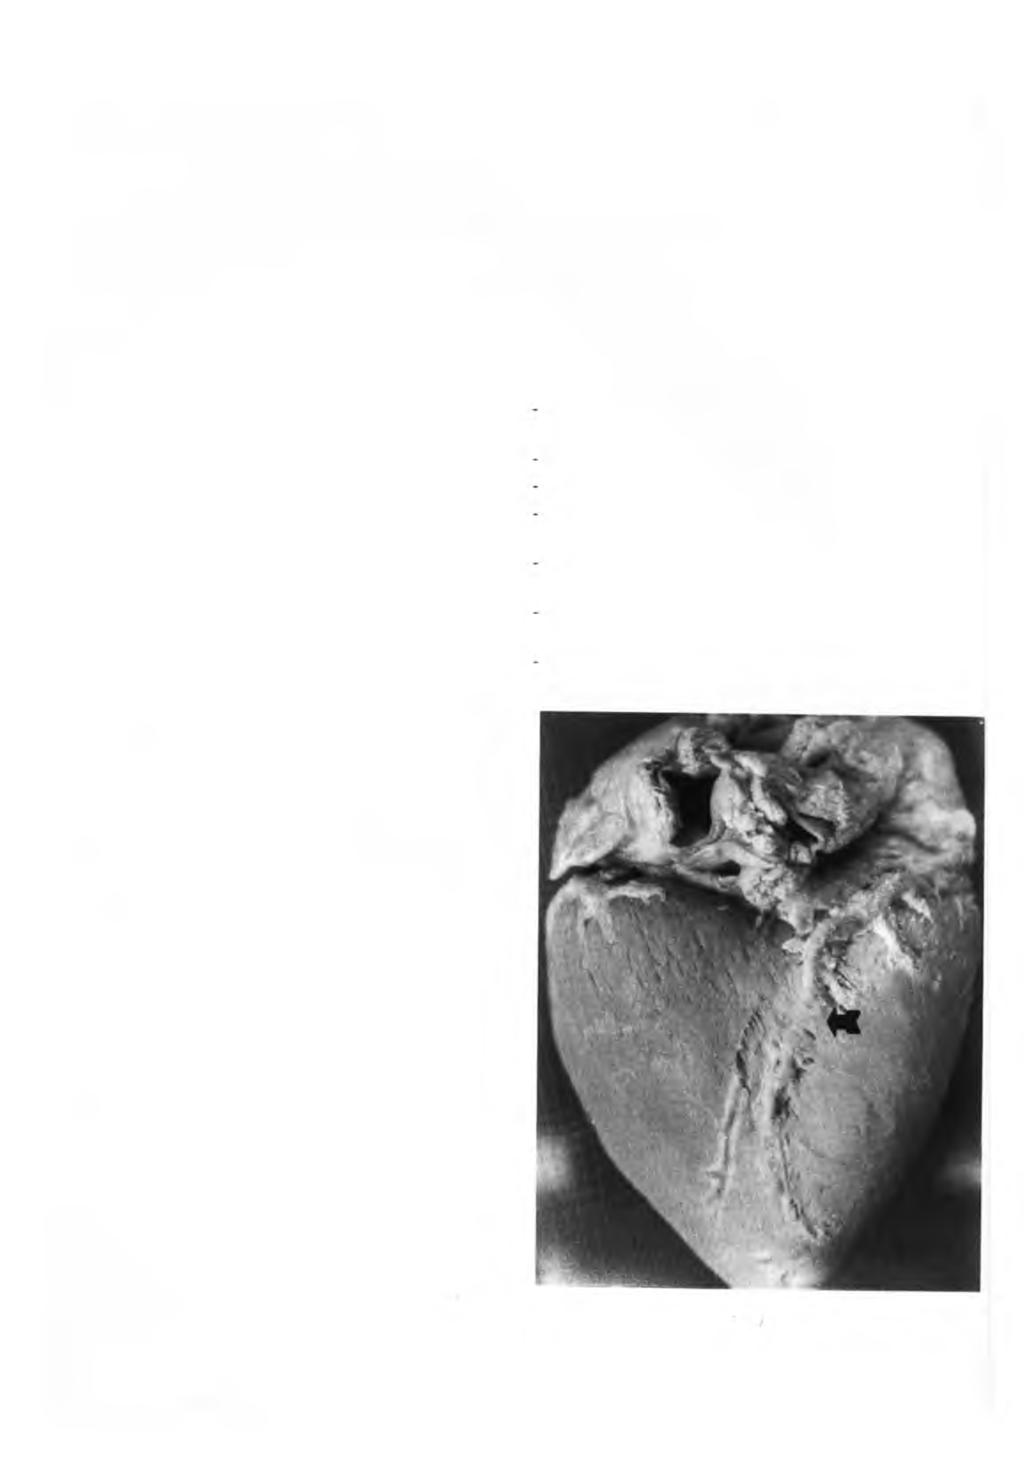 BOMBONATO. P.P.; DOMINGOS, C.O.; MARIANA, A.N.B.; SILVA, F.O.C.; INTELIZANO, W. Ocorrência de pomes de miocárdio em suínos. Braz. J. vet. Res. anim. Sei., São Paulo, v.3 1,n.2,p. 107-11, 1994.